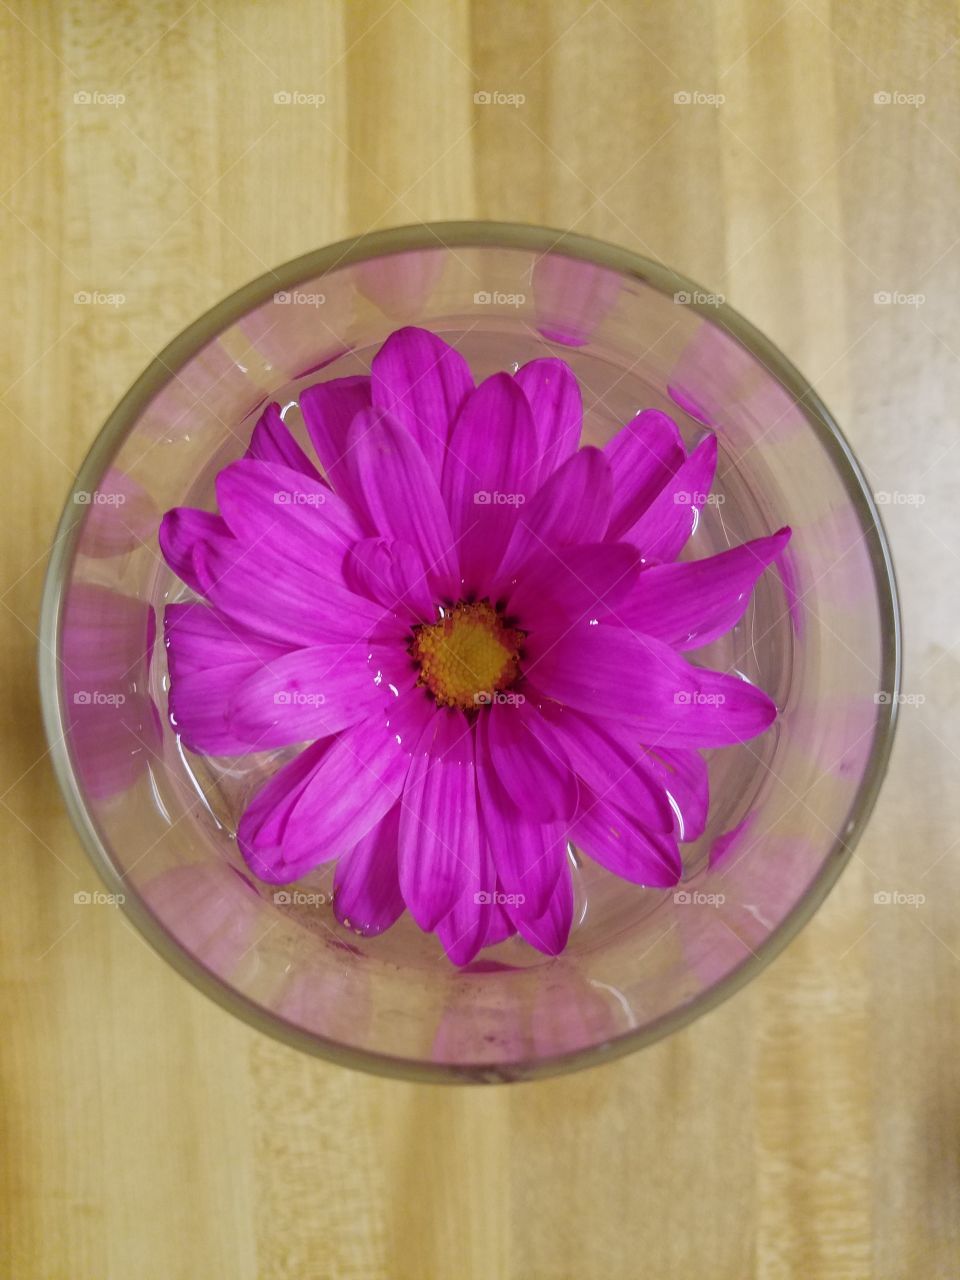 flower in a wine glass